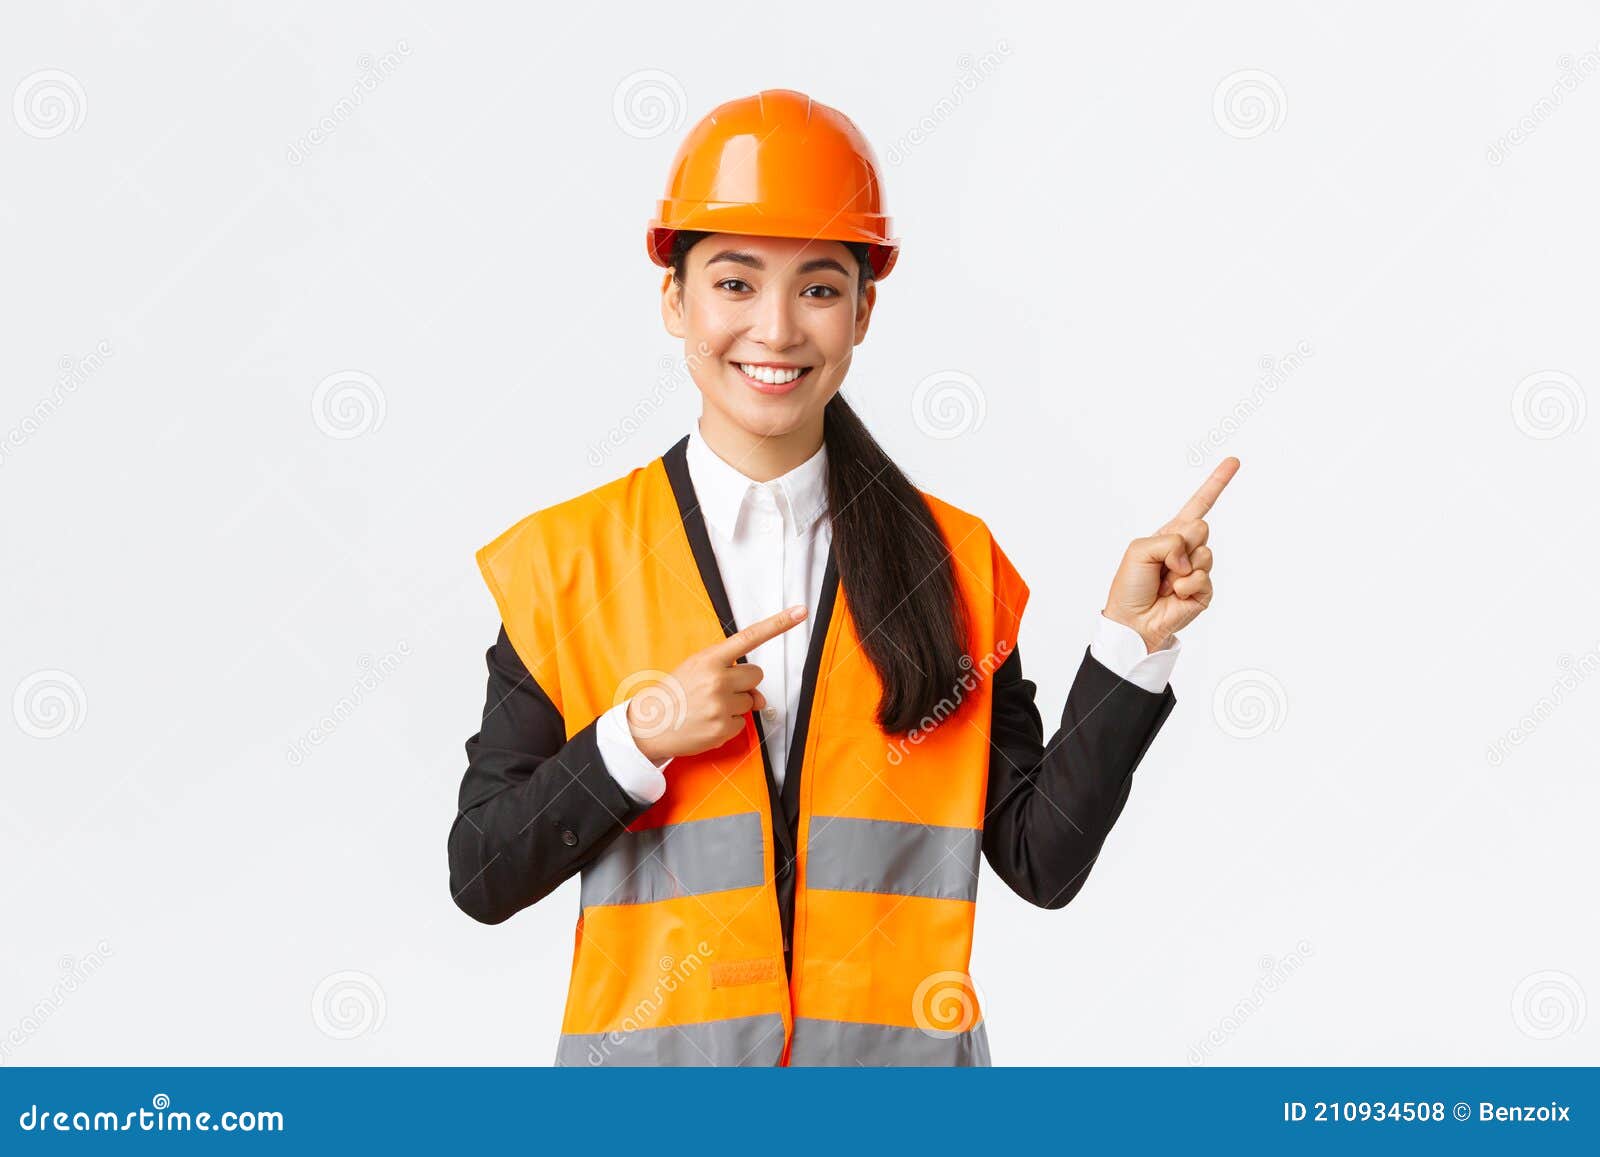 Construcción De Edificios Y Concepto Industrial. Sonriente Mujer Asiática  Ingeniera En Casco De Seguridad Y Ropa Reflectante Foto de archivo - Imagen  de empresario, atractivo: 210934508